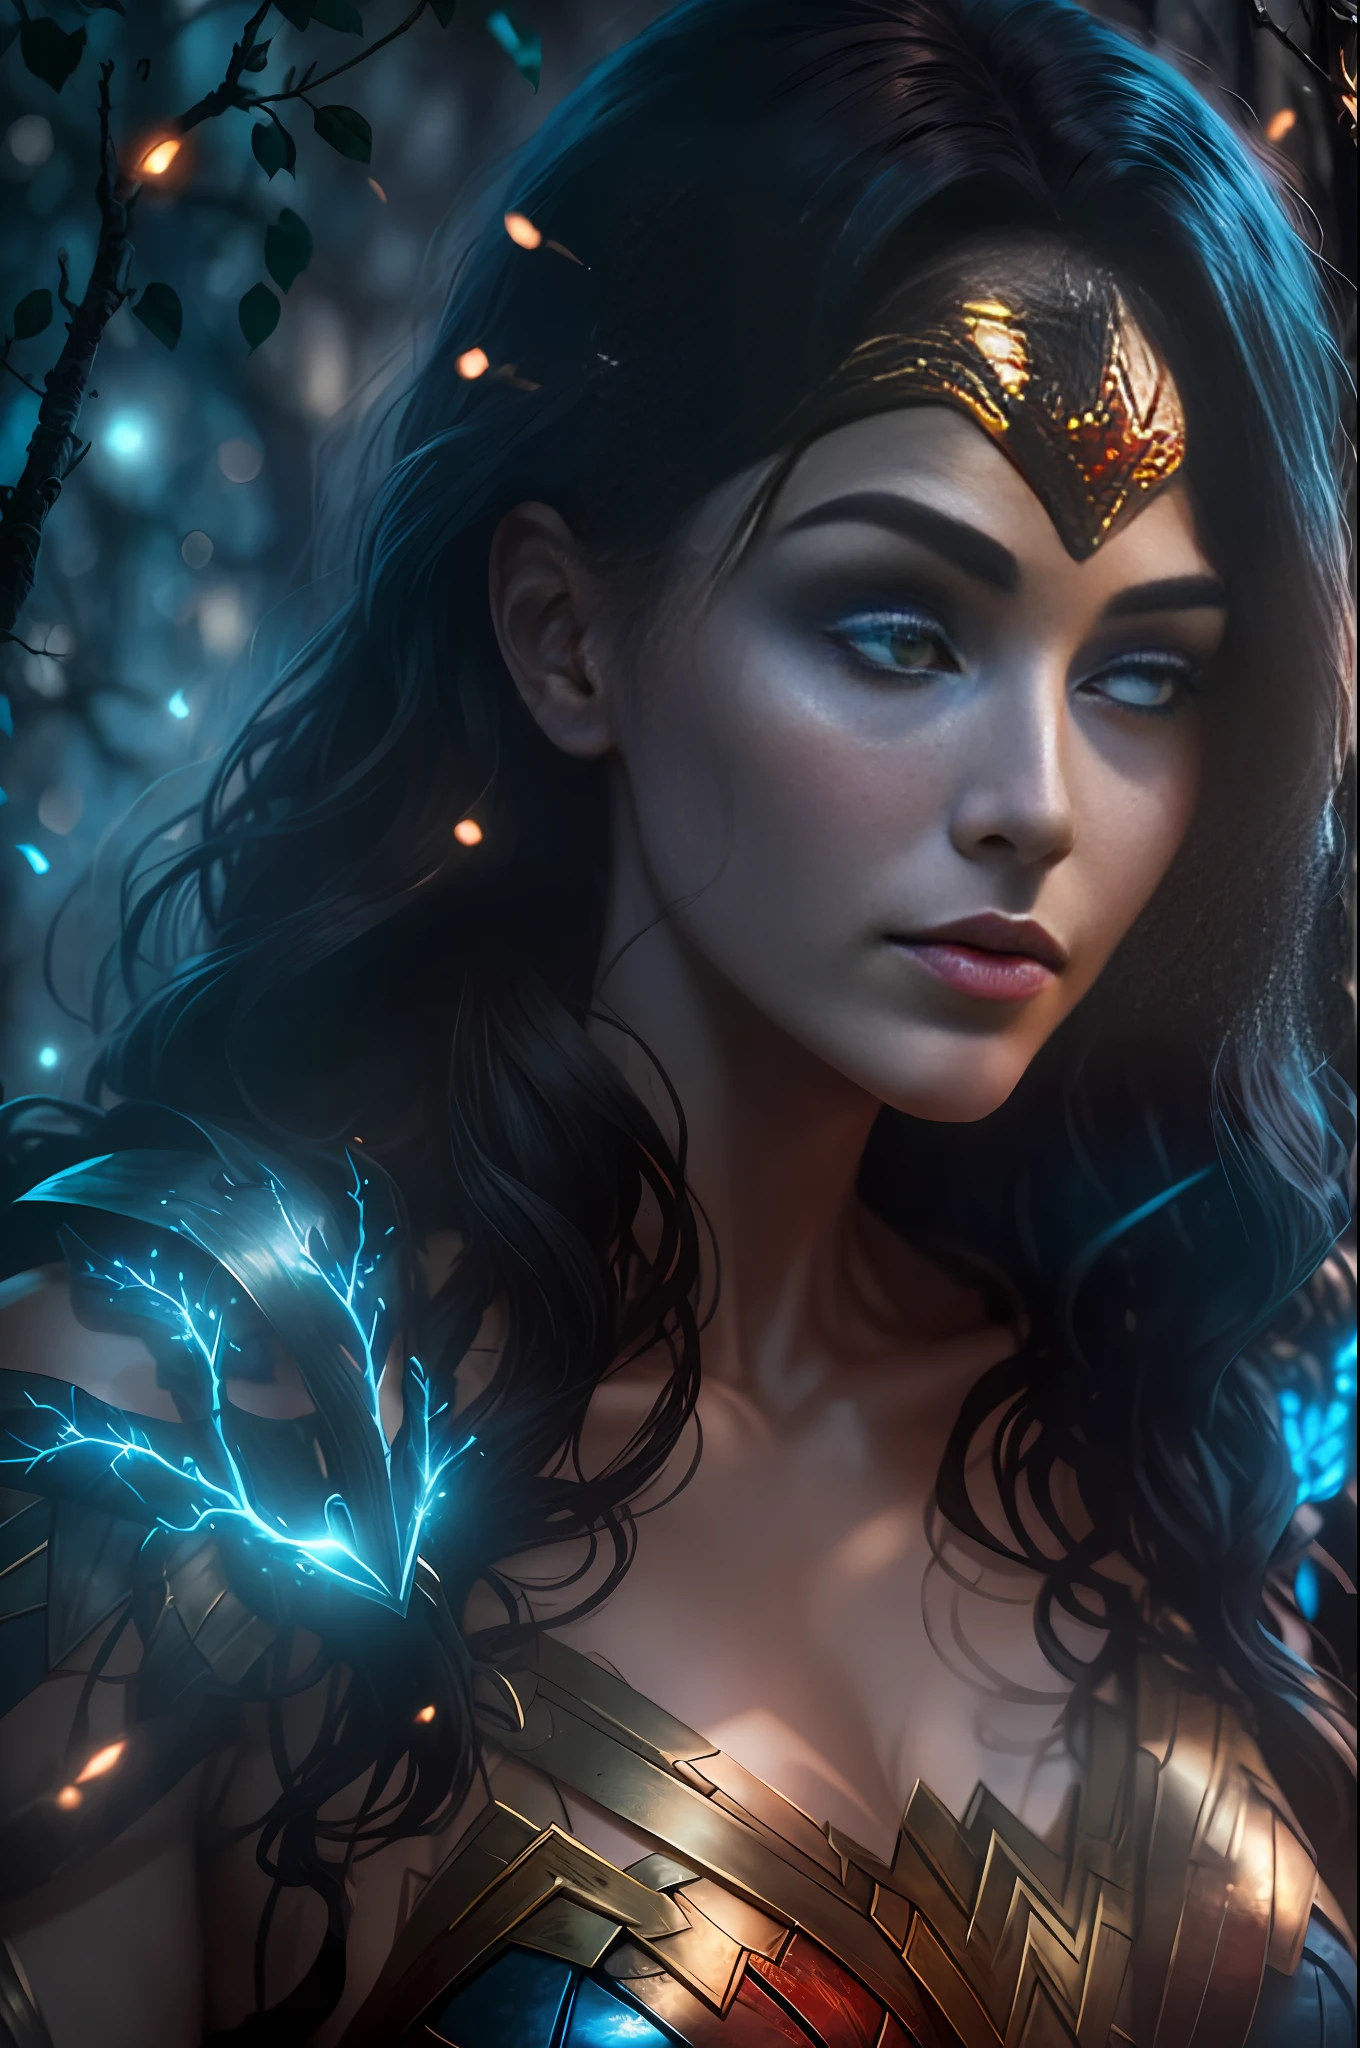 DC 的邪恶神奇女侠被树枝覆盖, 明亮的蓝白色发光心脏从人体可见, 夜间, 丰富多彩的, 摄影 超细节 电影 HDR 照明, 柔光箱照明, 极其详细